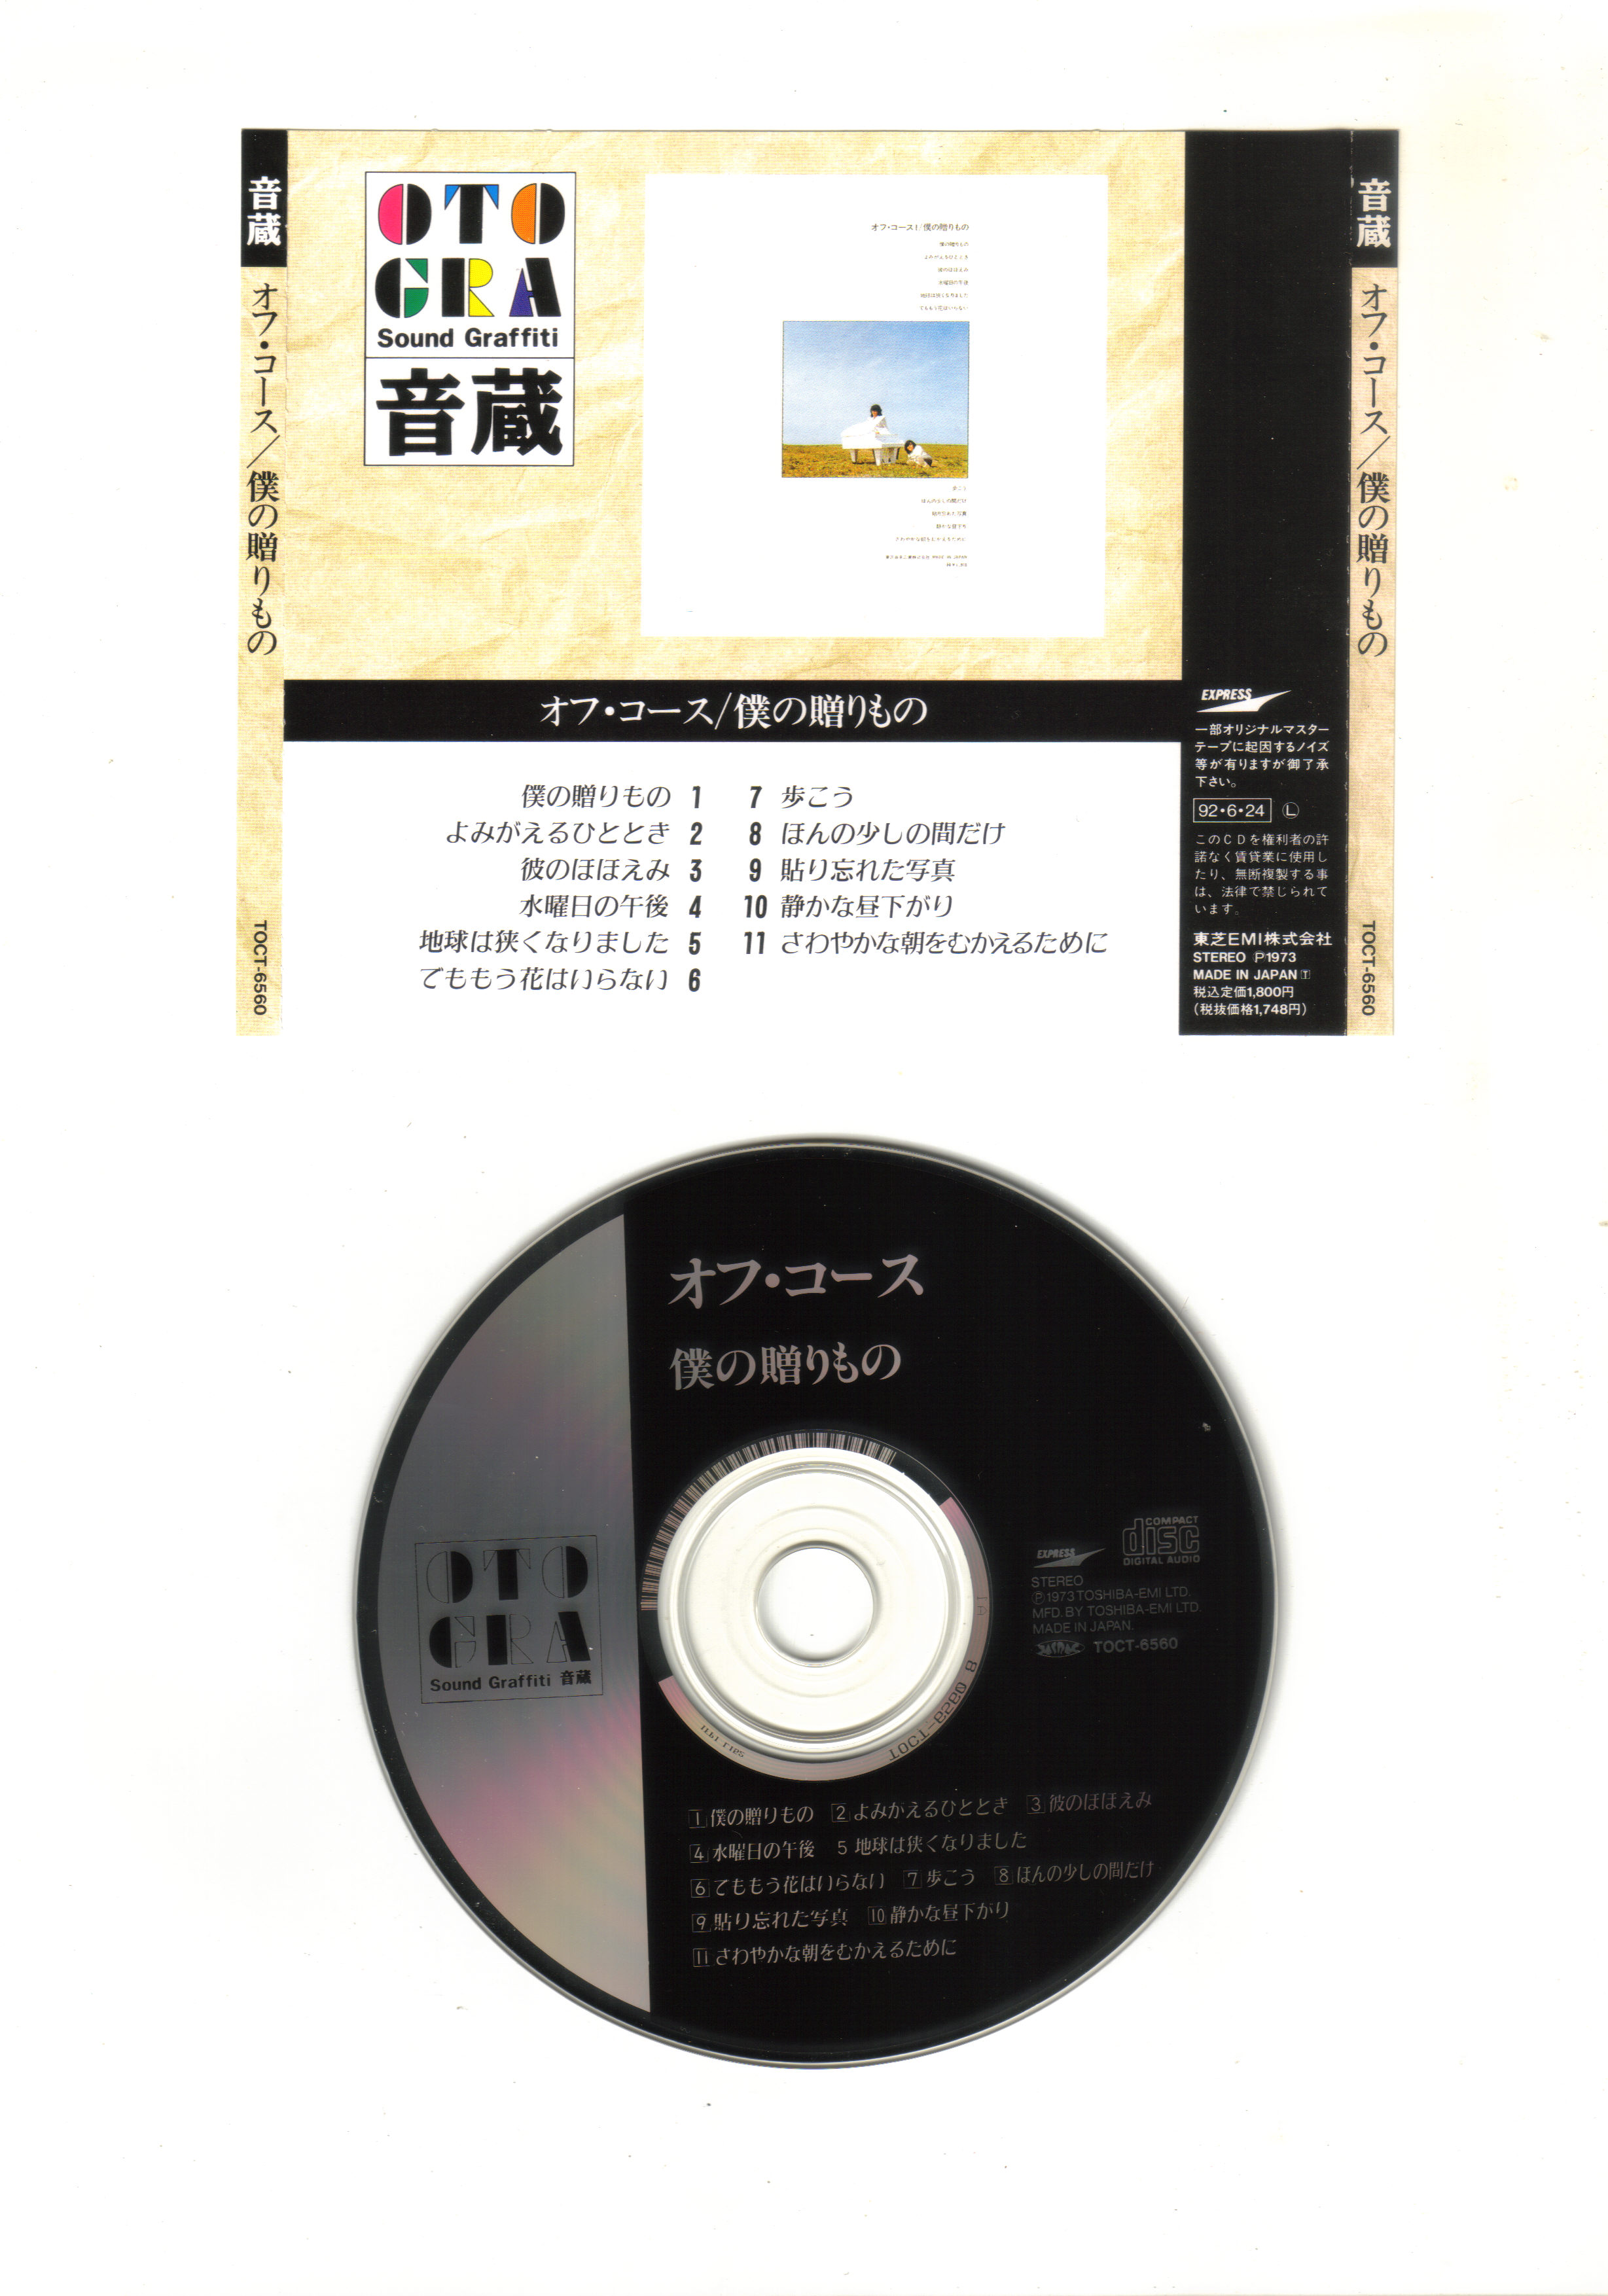 Back CD.jpg